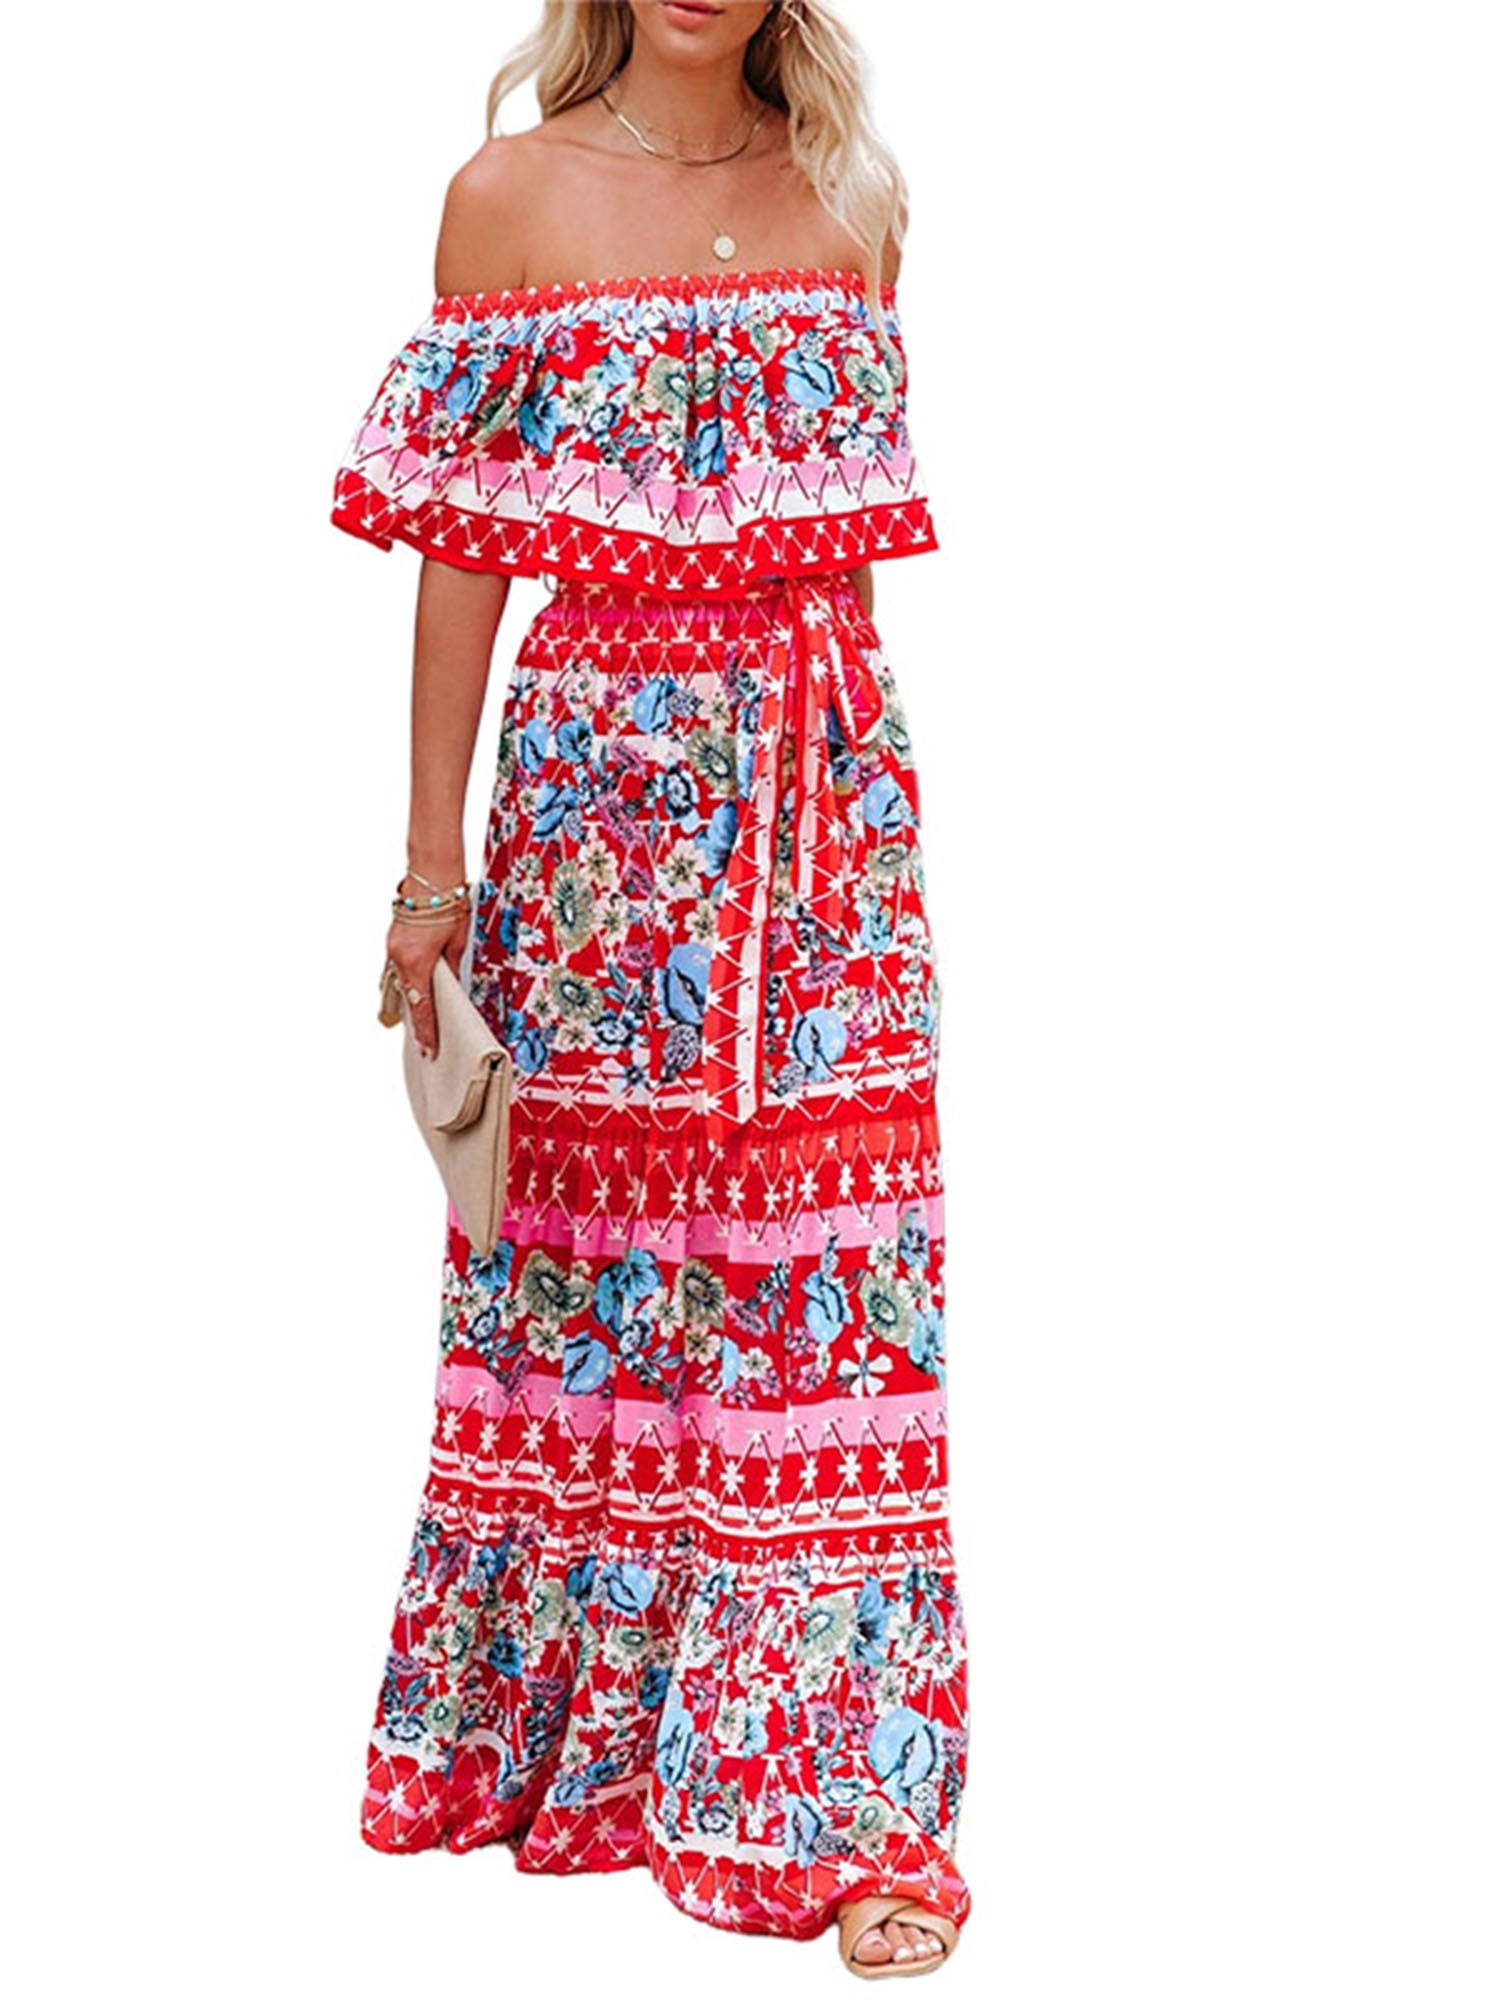 Lumento Summer Sun Dress For Womens Floral Printed Hawaiian Beach Dress Off Shoulder Maxi Dress